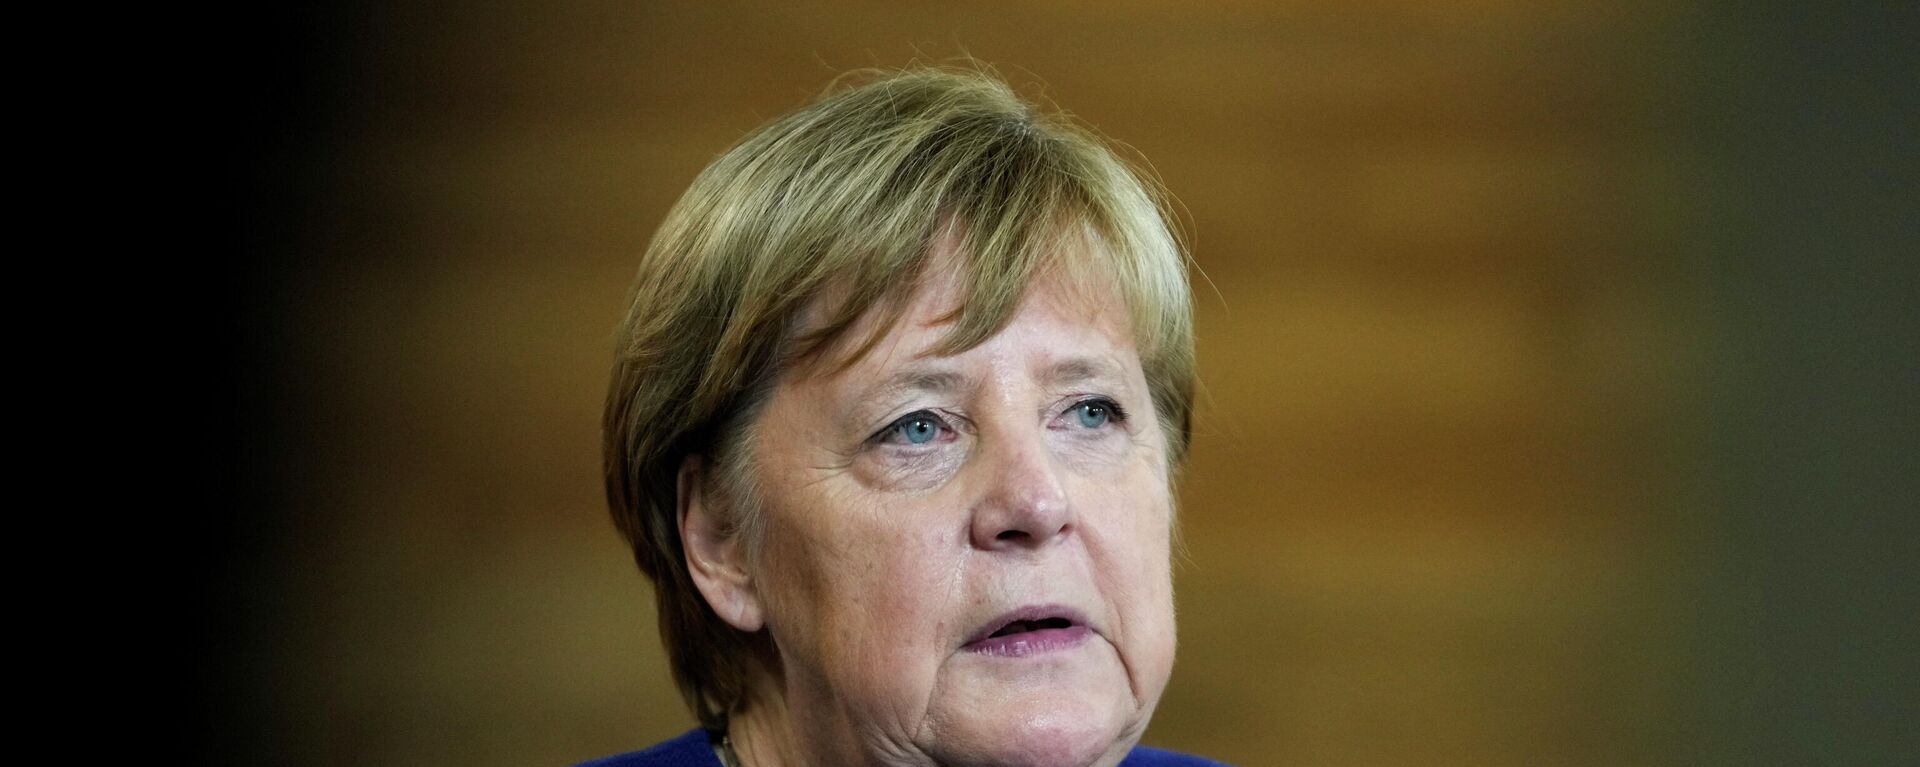 Almanya Başbakanı Angela Merkel - Sputnik Türkiye, 1920, 25.11.2021